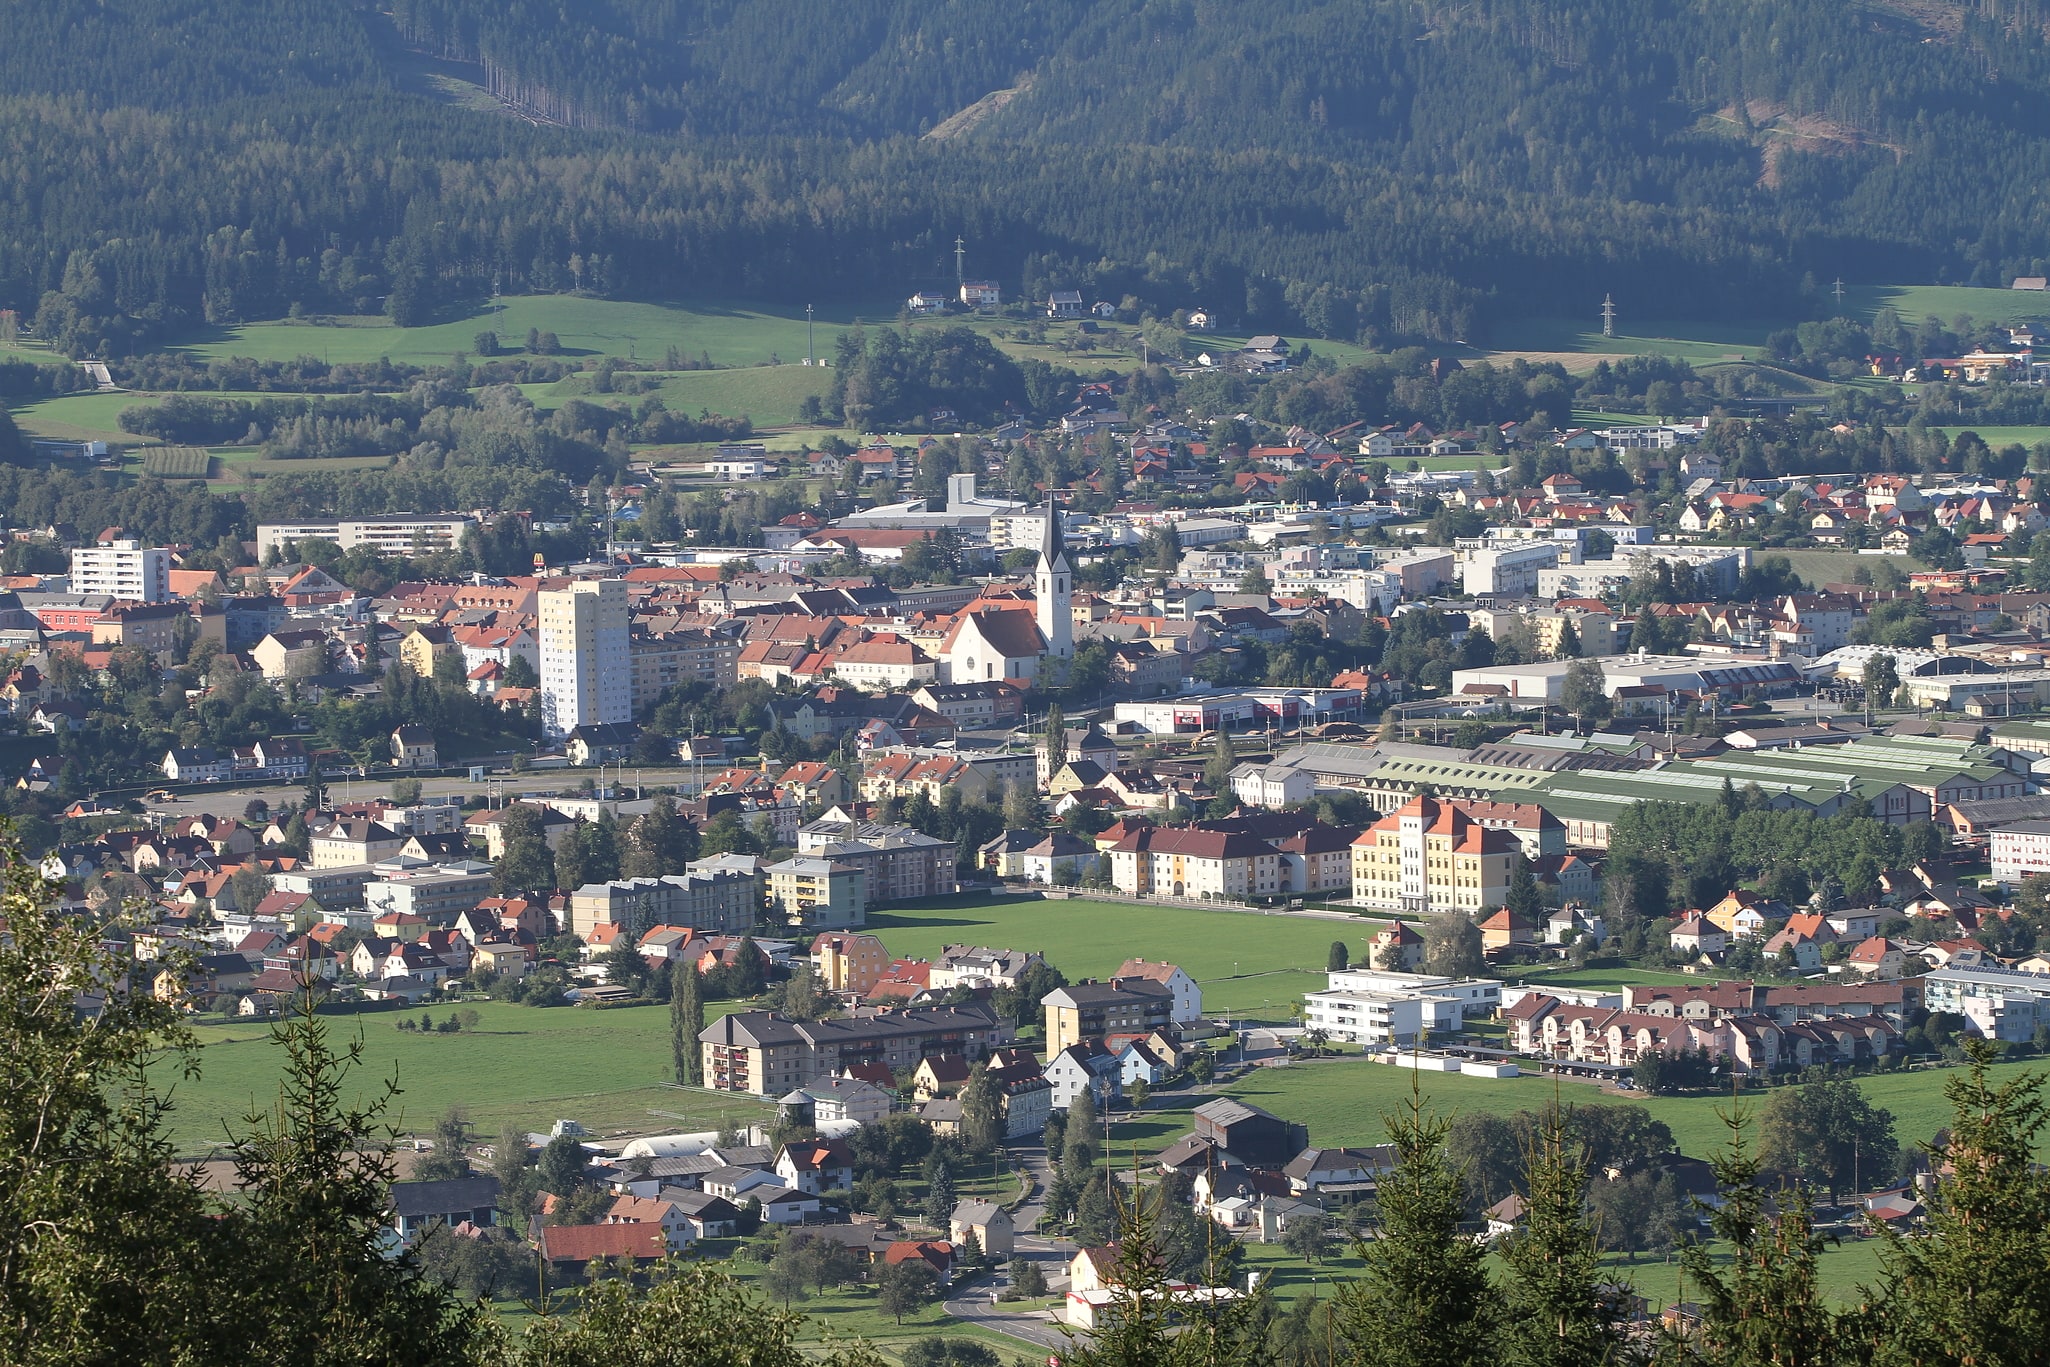 Knittelfeld, Austria